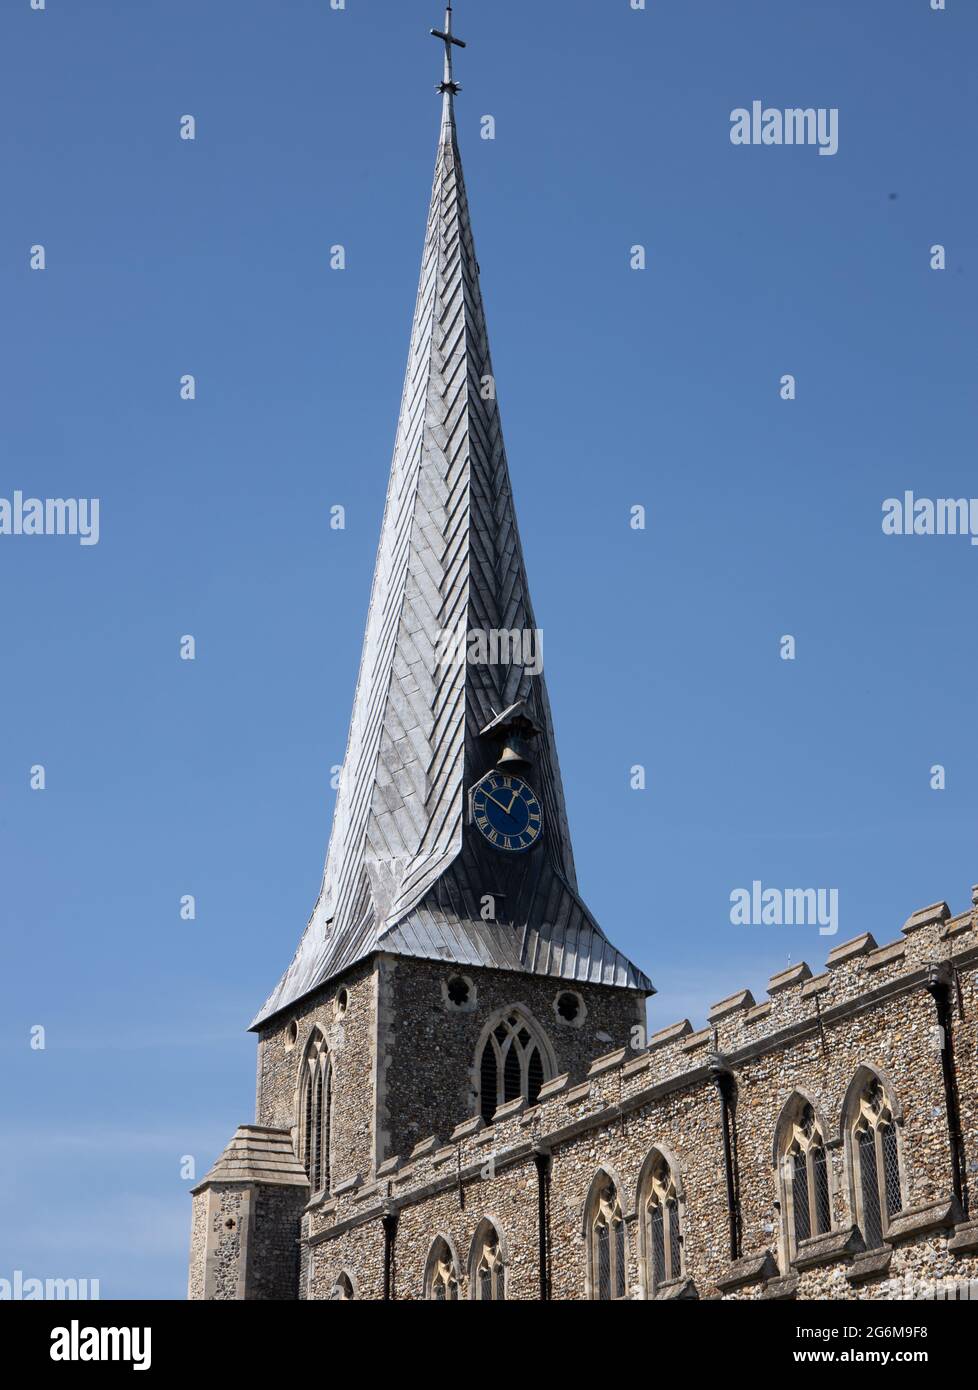 Le bois médiéval et la flèche de plomb, l'horloge et la cloche de l'église Sainte Marie à Hadleigh, Suffolk, Angleterre Banque D'Images